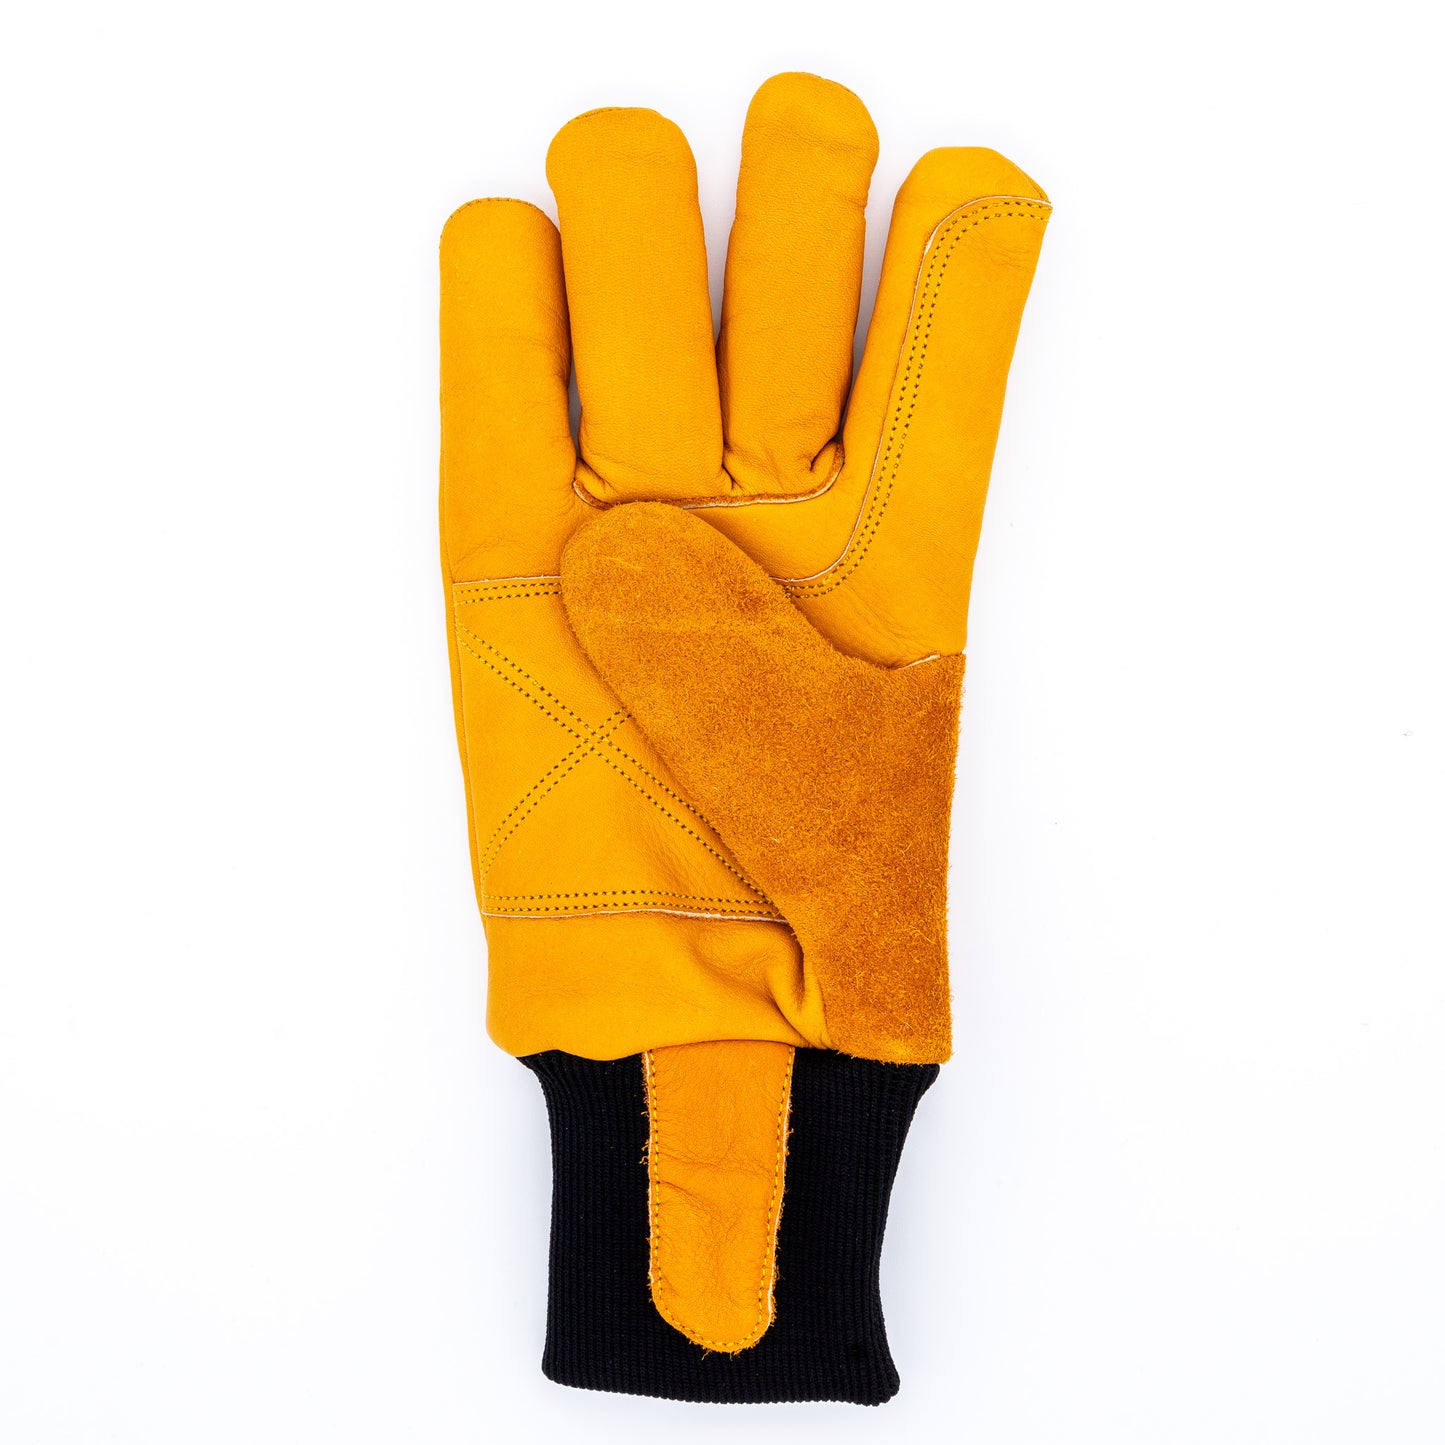 Mokk Glove